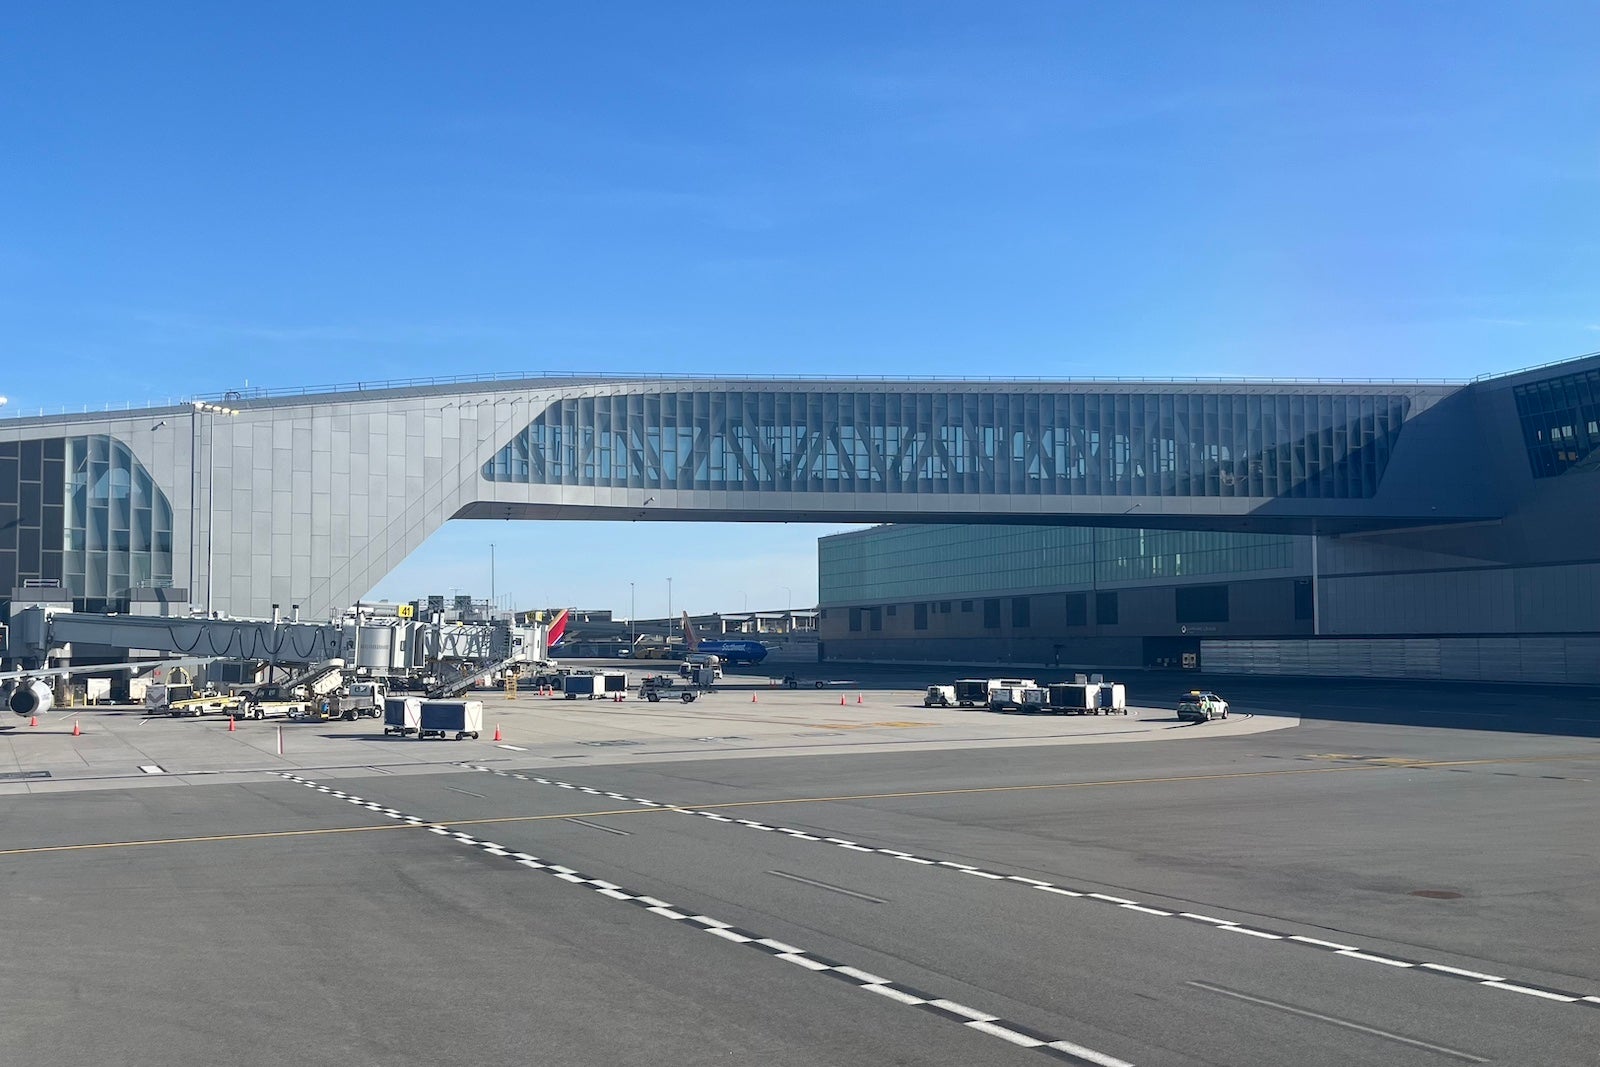 Terminal B at New York's LaGuardia Airport (LGA)